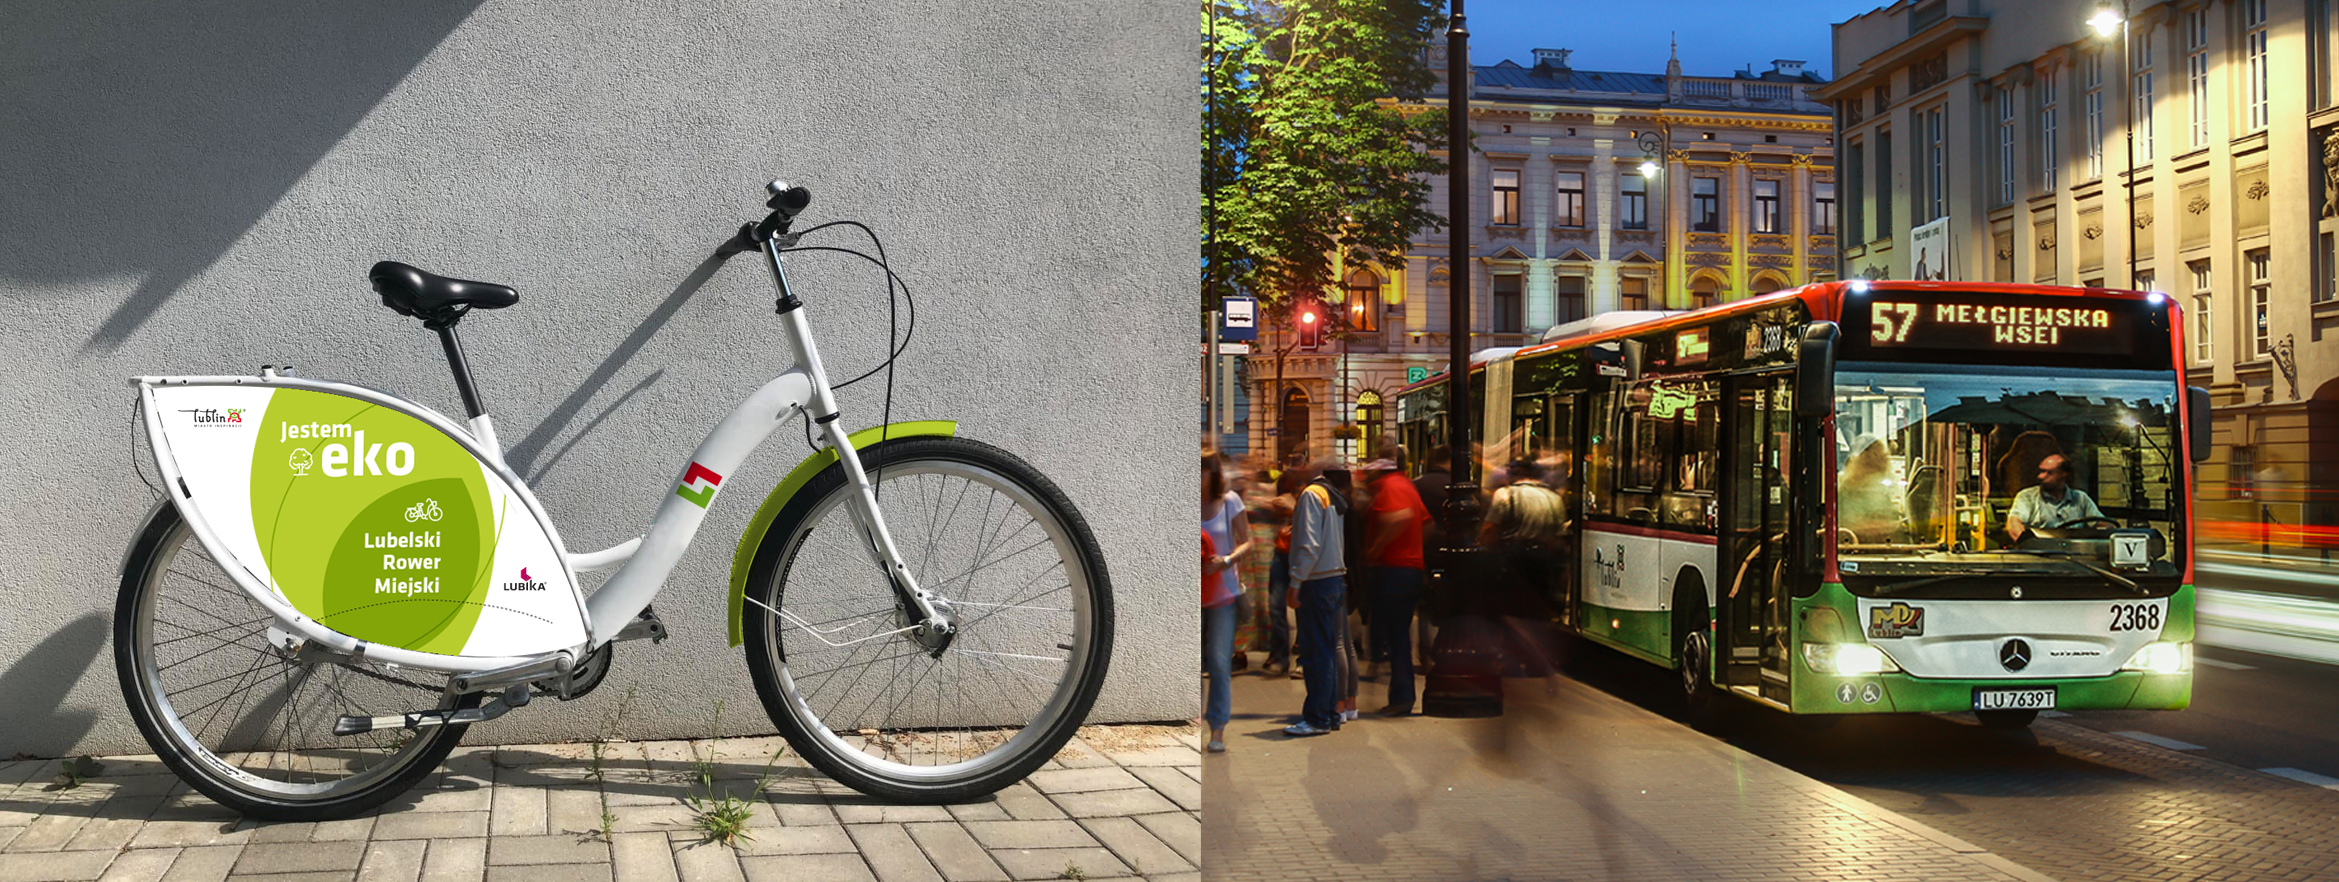 MPK Lublin wchodzi w nowy obszar działalności. Spółka zajmie się miejskimi rowerami